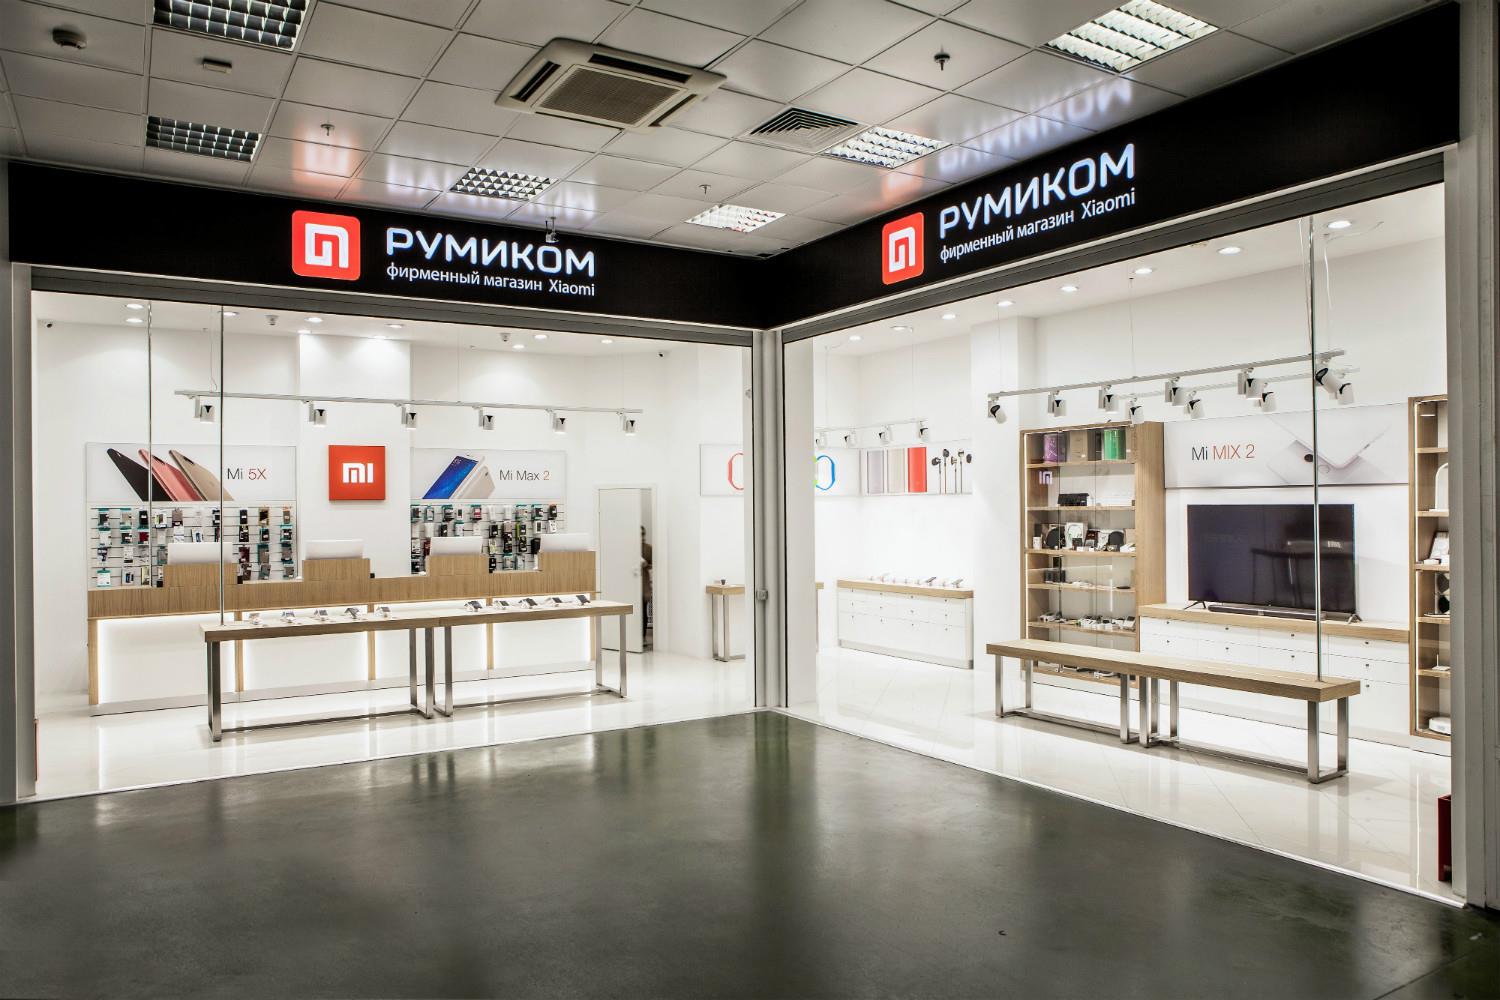 Ми про ру. Румиком фирменный магазин. Магазин Xiaomi. Магазин Ксиаоми. Магазин Xiaomi в Москве.